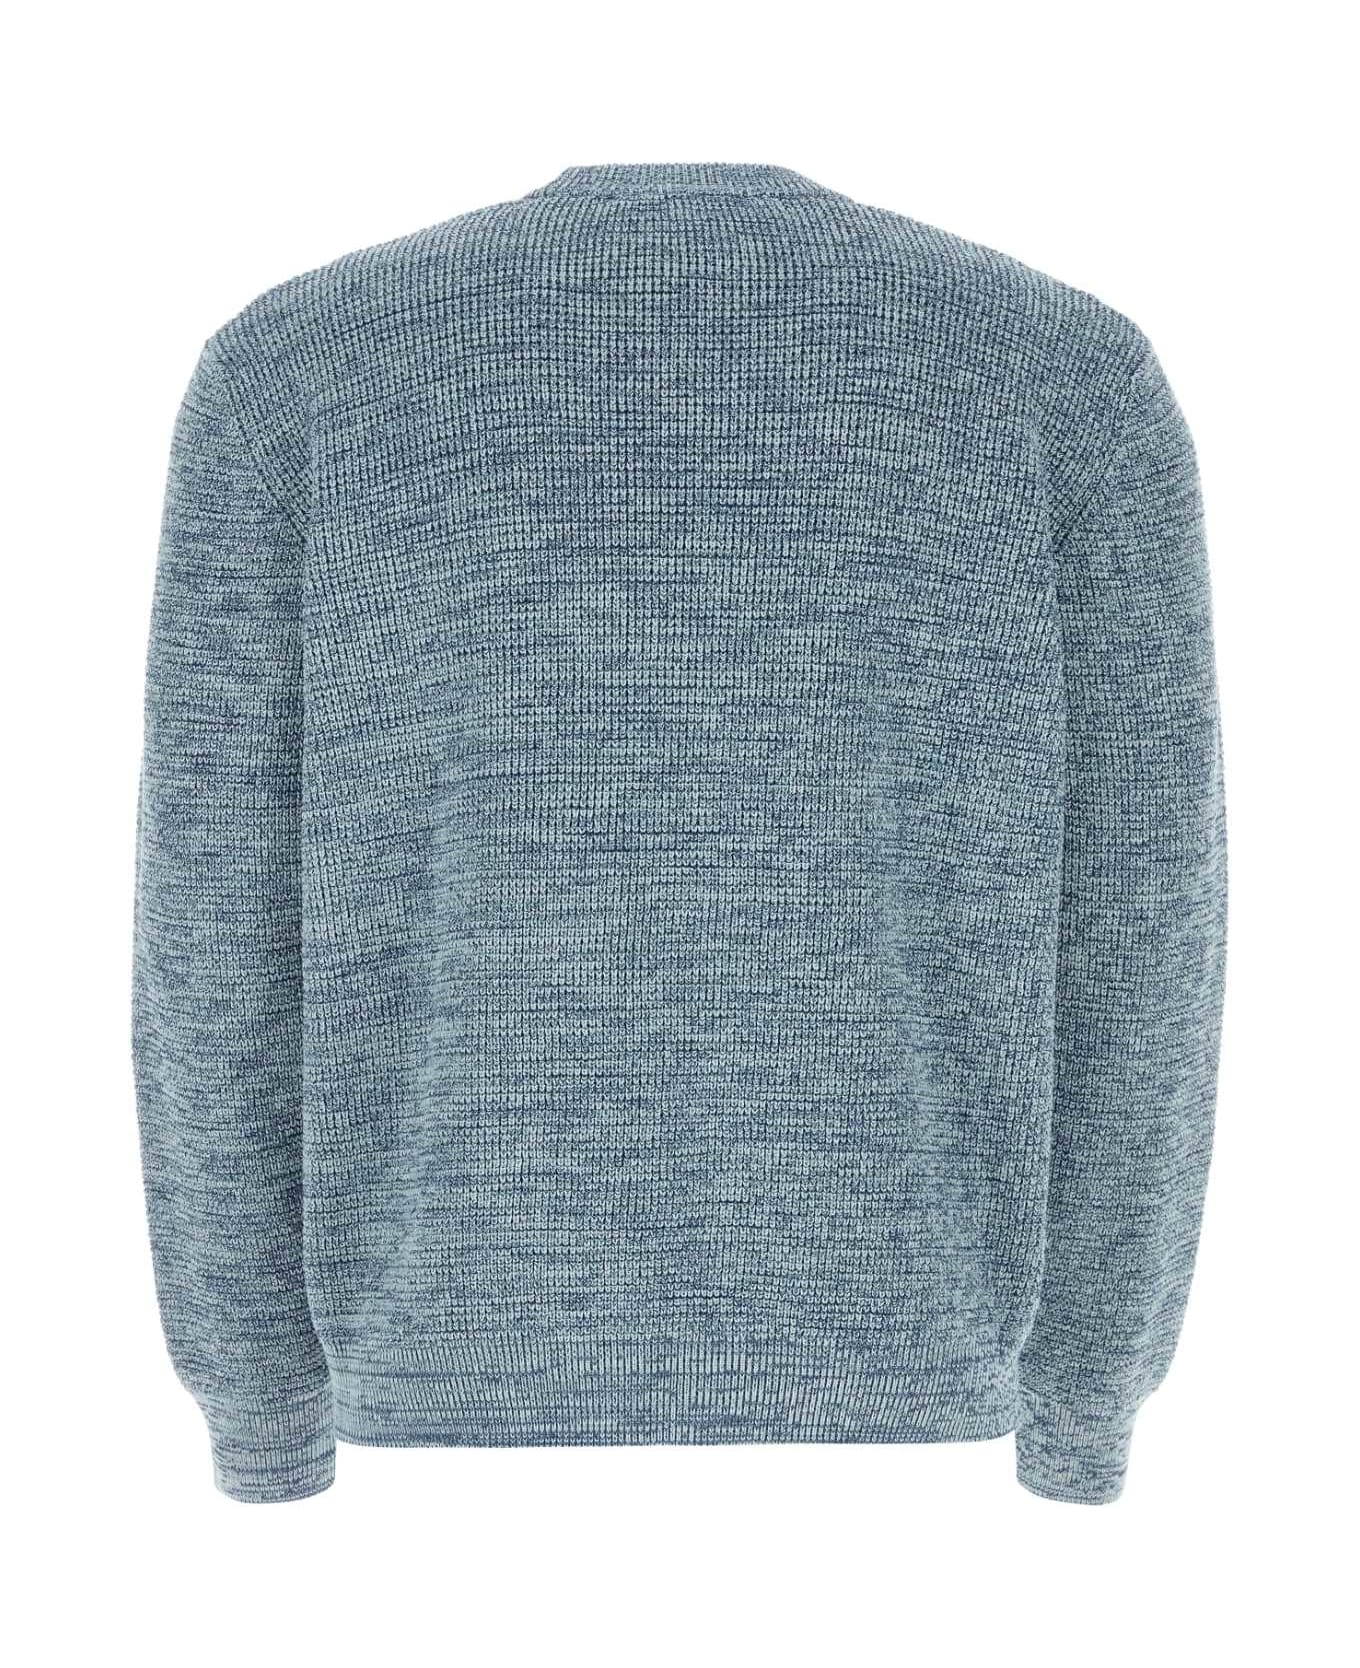 Maison Kitsuné Melange Light Blue Cotton Sweater - INKBLUEMELANGE フリース